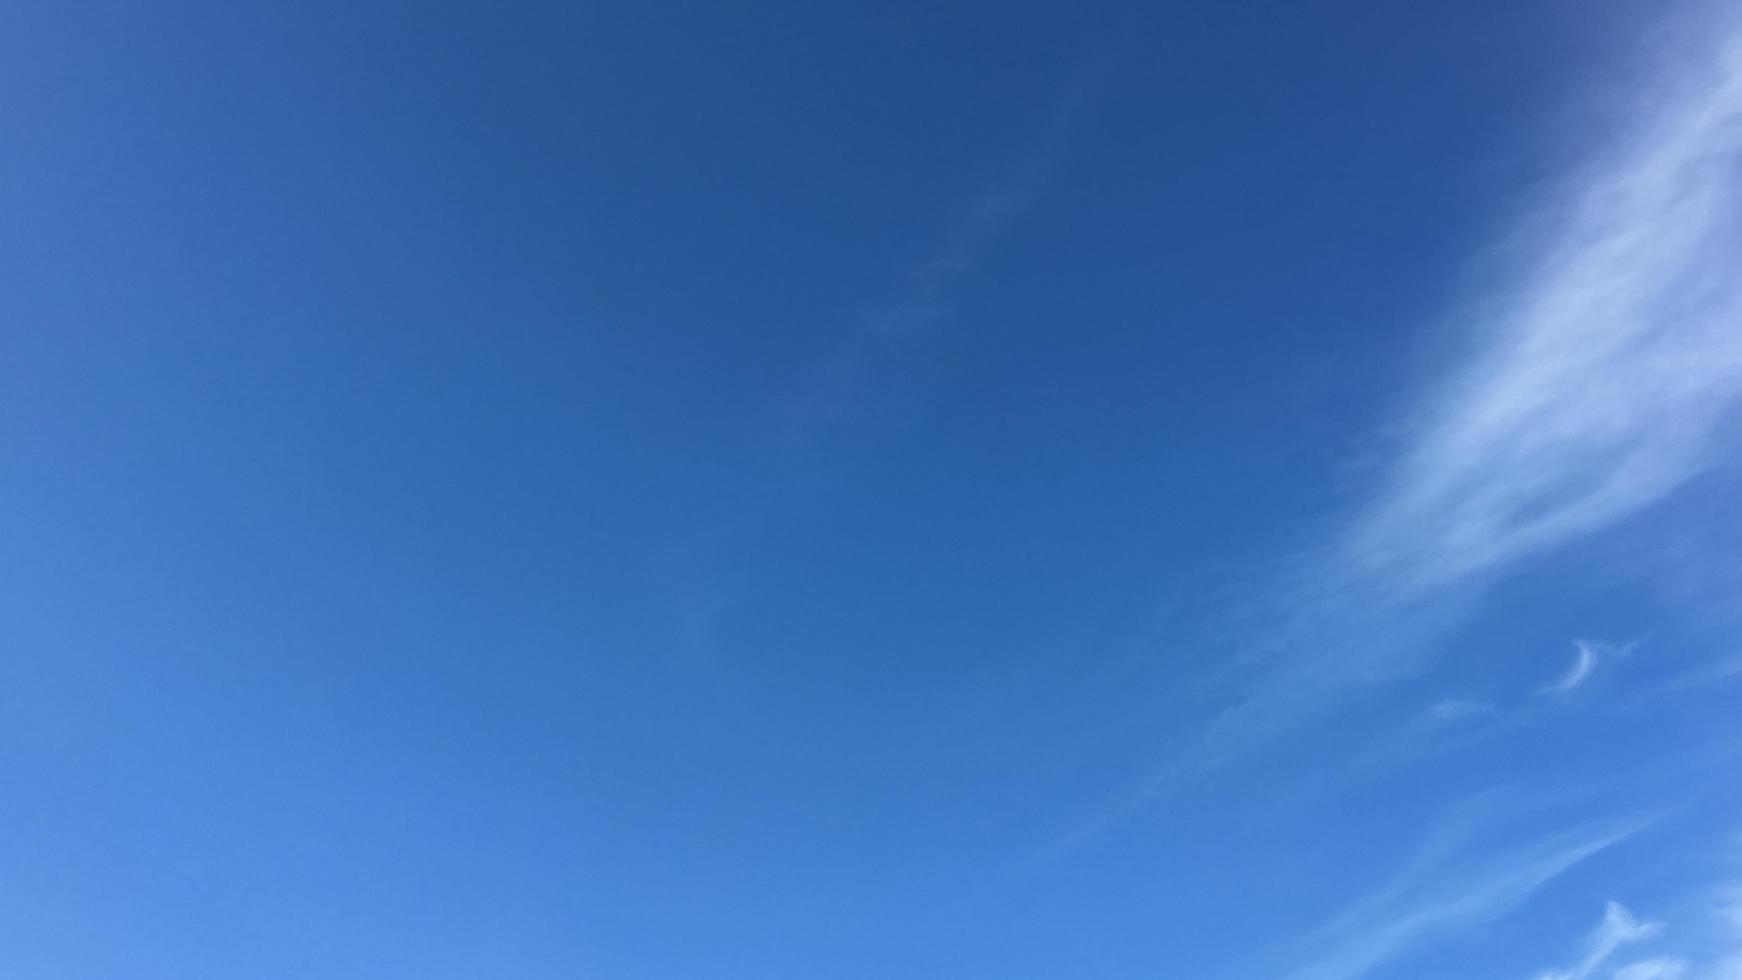 nuvoloso e blu sullo sfondo del mattino, messa a fuoco morbida foto